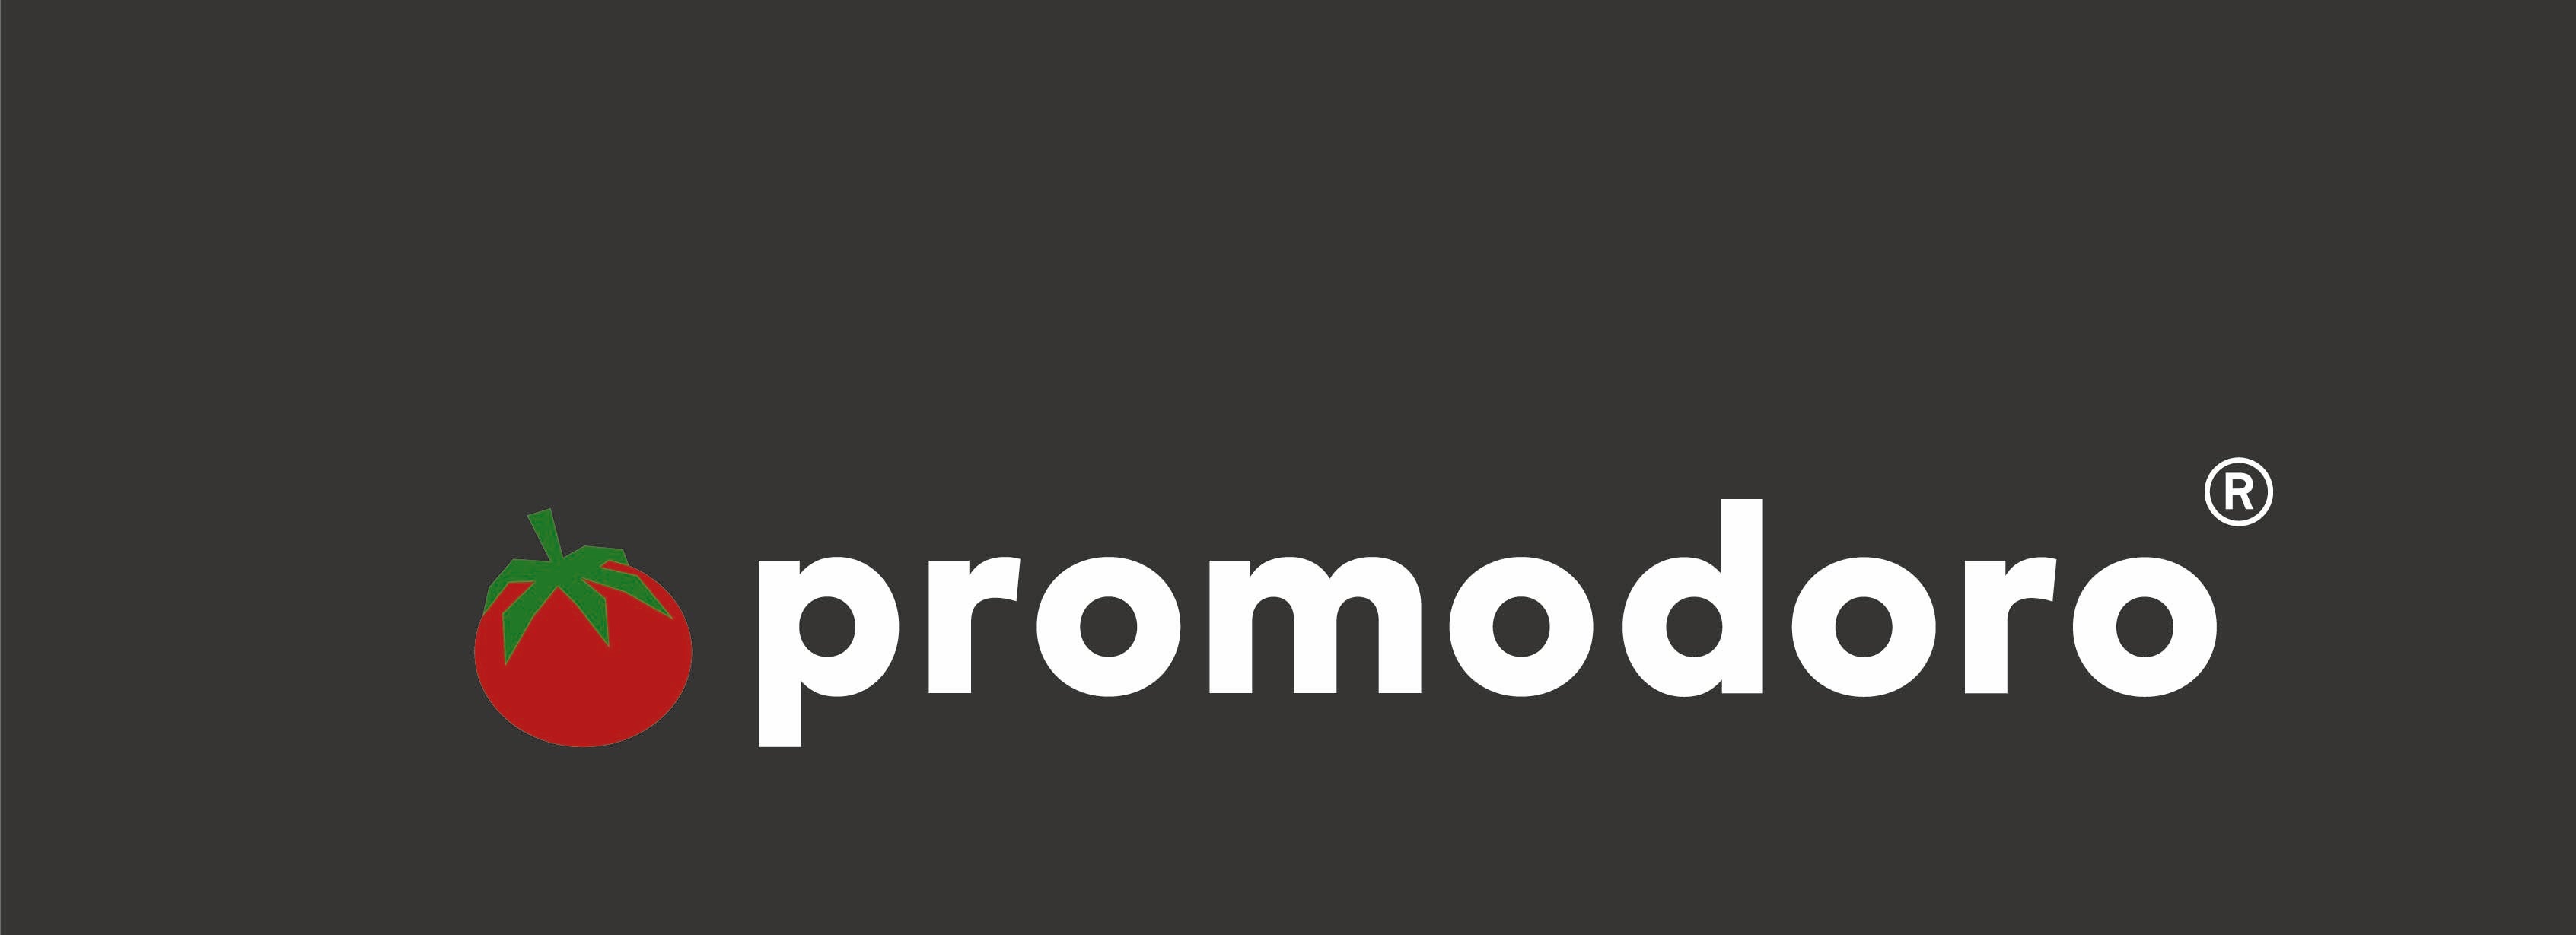 Print Core: promodoro Logo